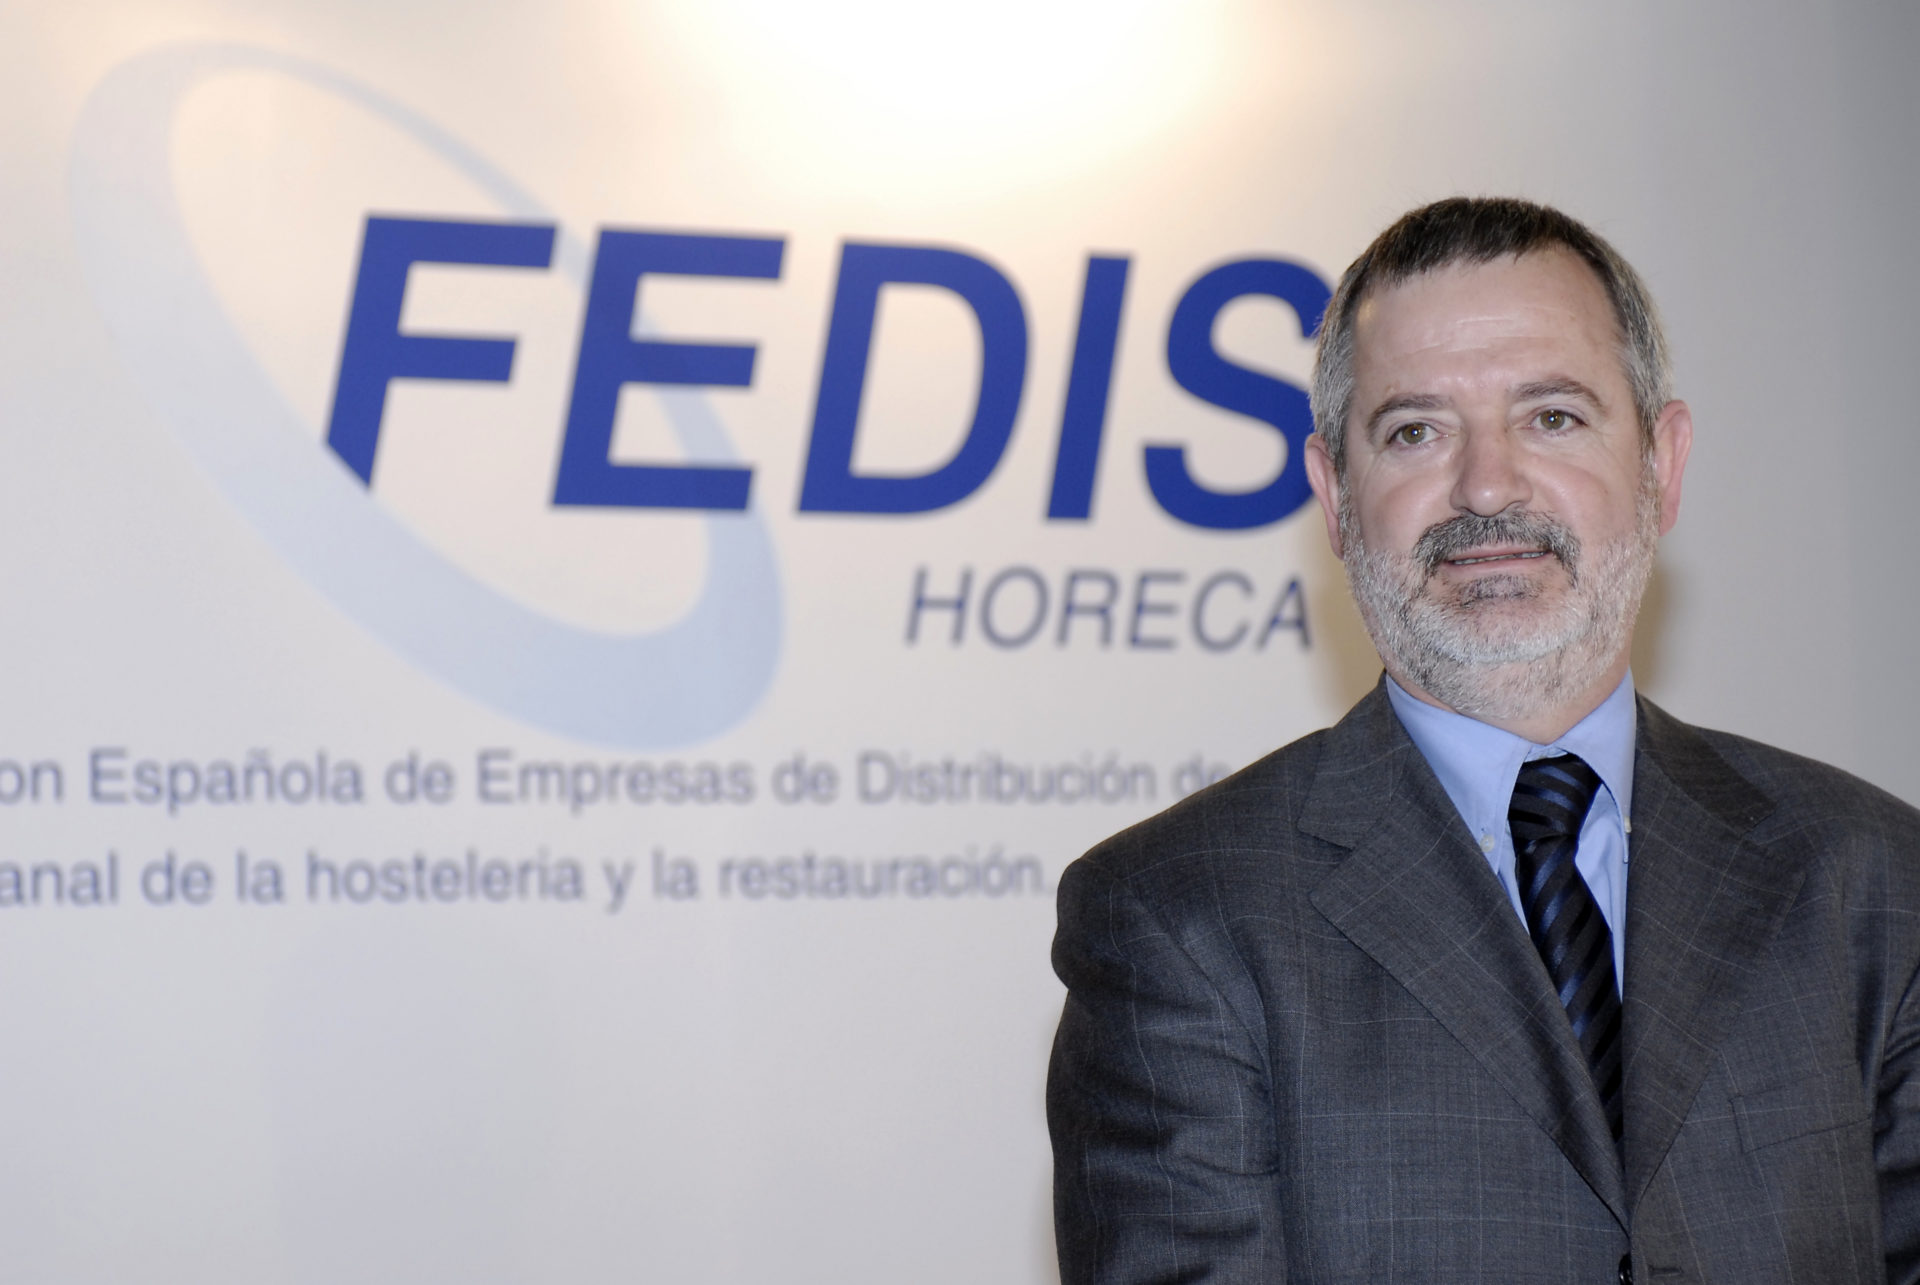 José Manuel Fernández Echevarría, director general de Fedishoreca.